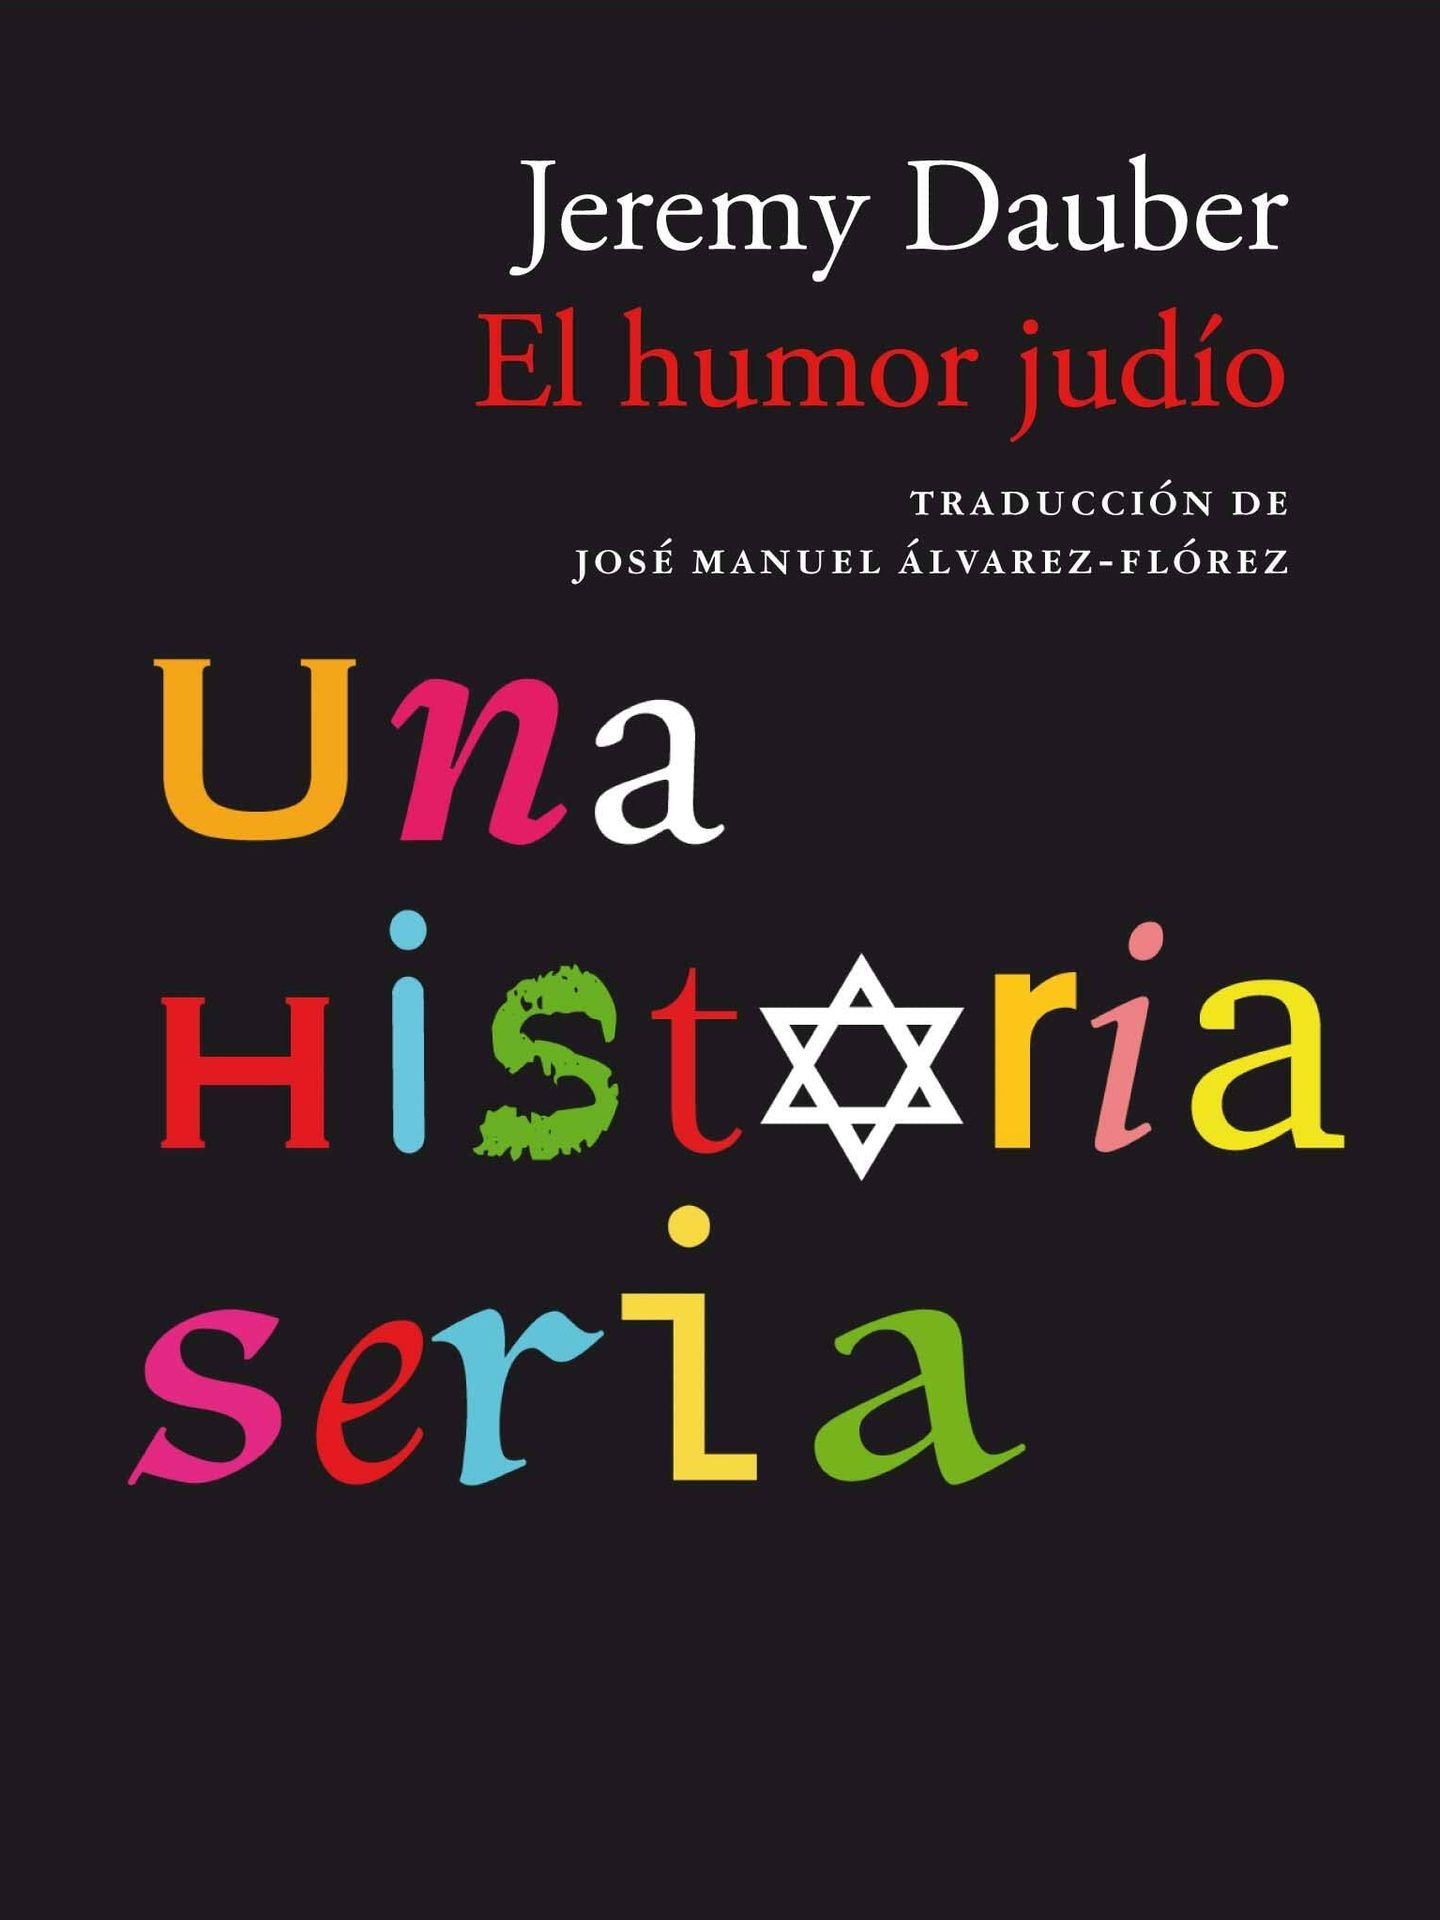 'El humor judío, una historia seria'.